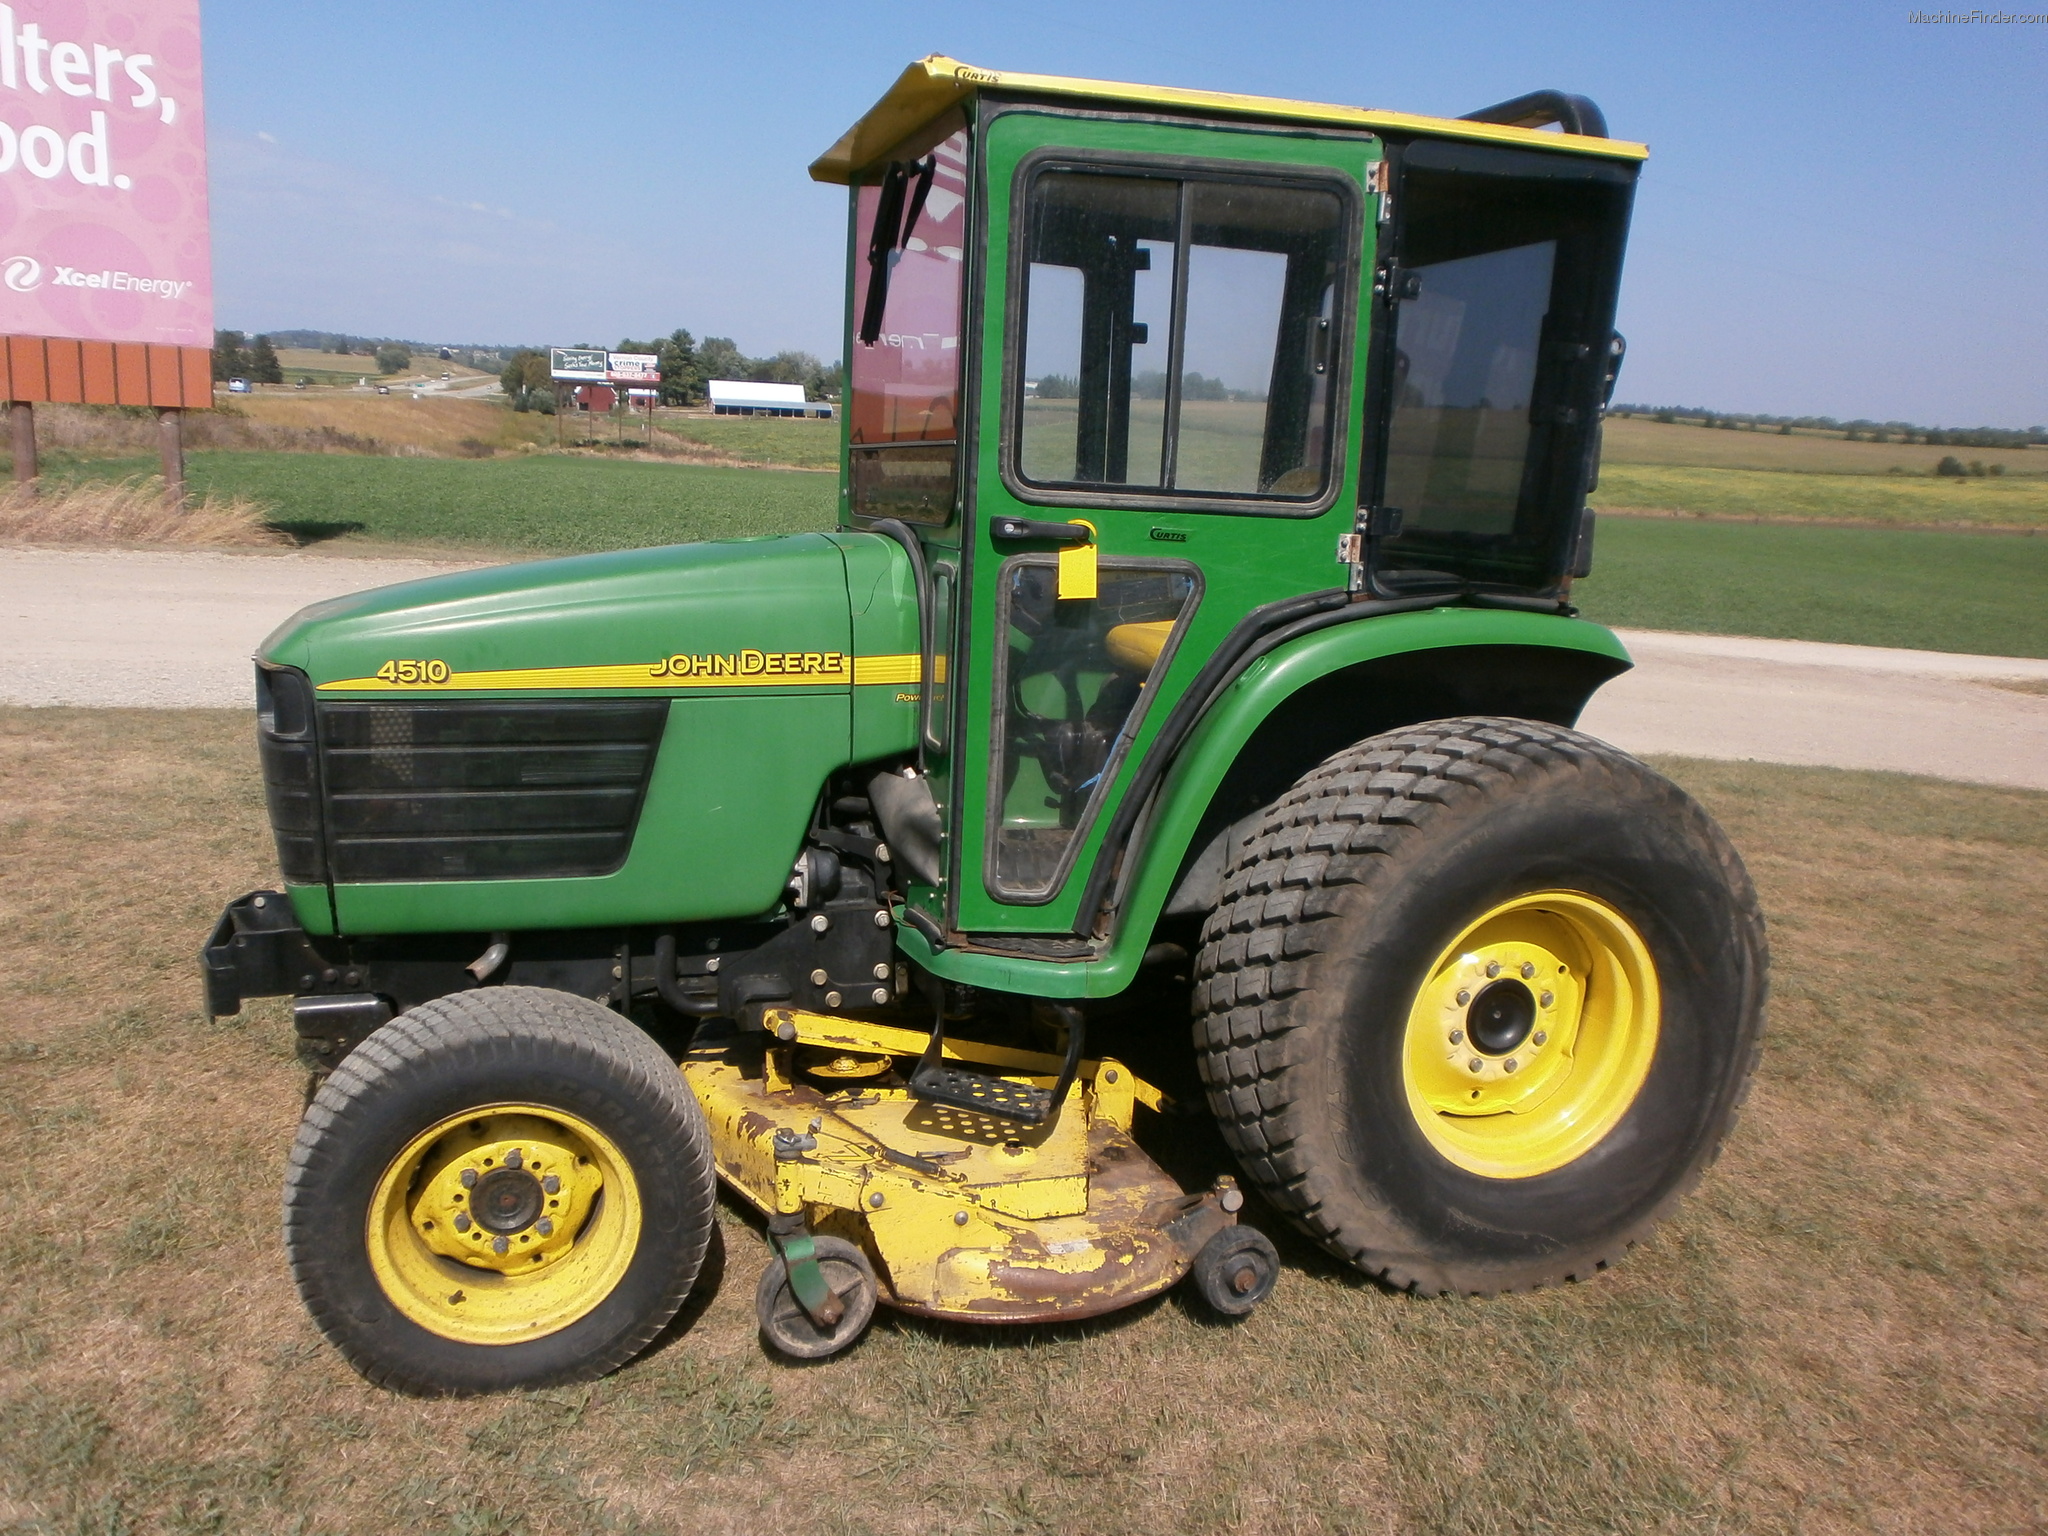 2002 John Deere 4510 Tractors - Compact (1-40hp.) - John Deere ...